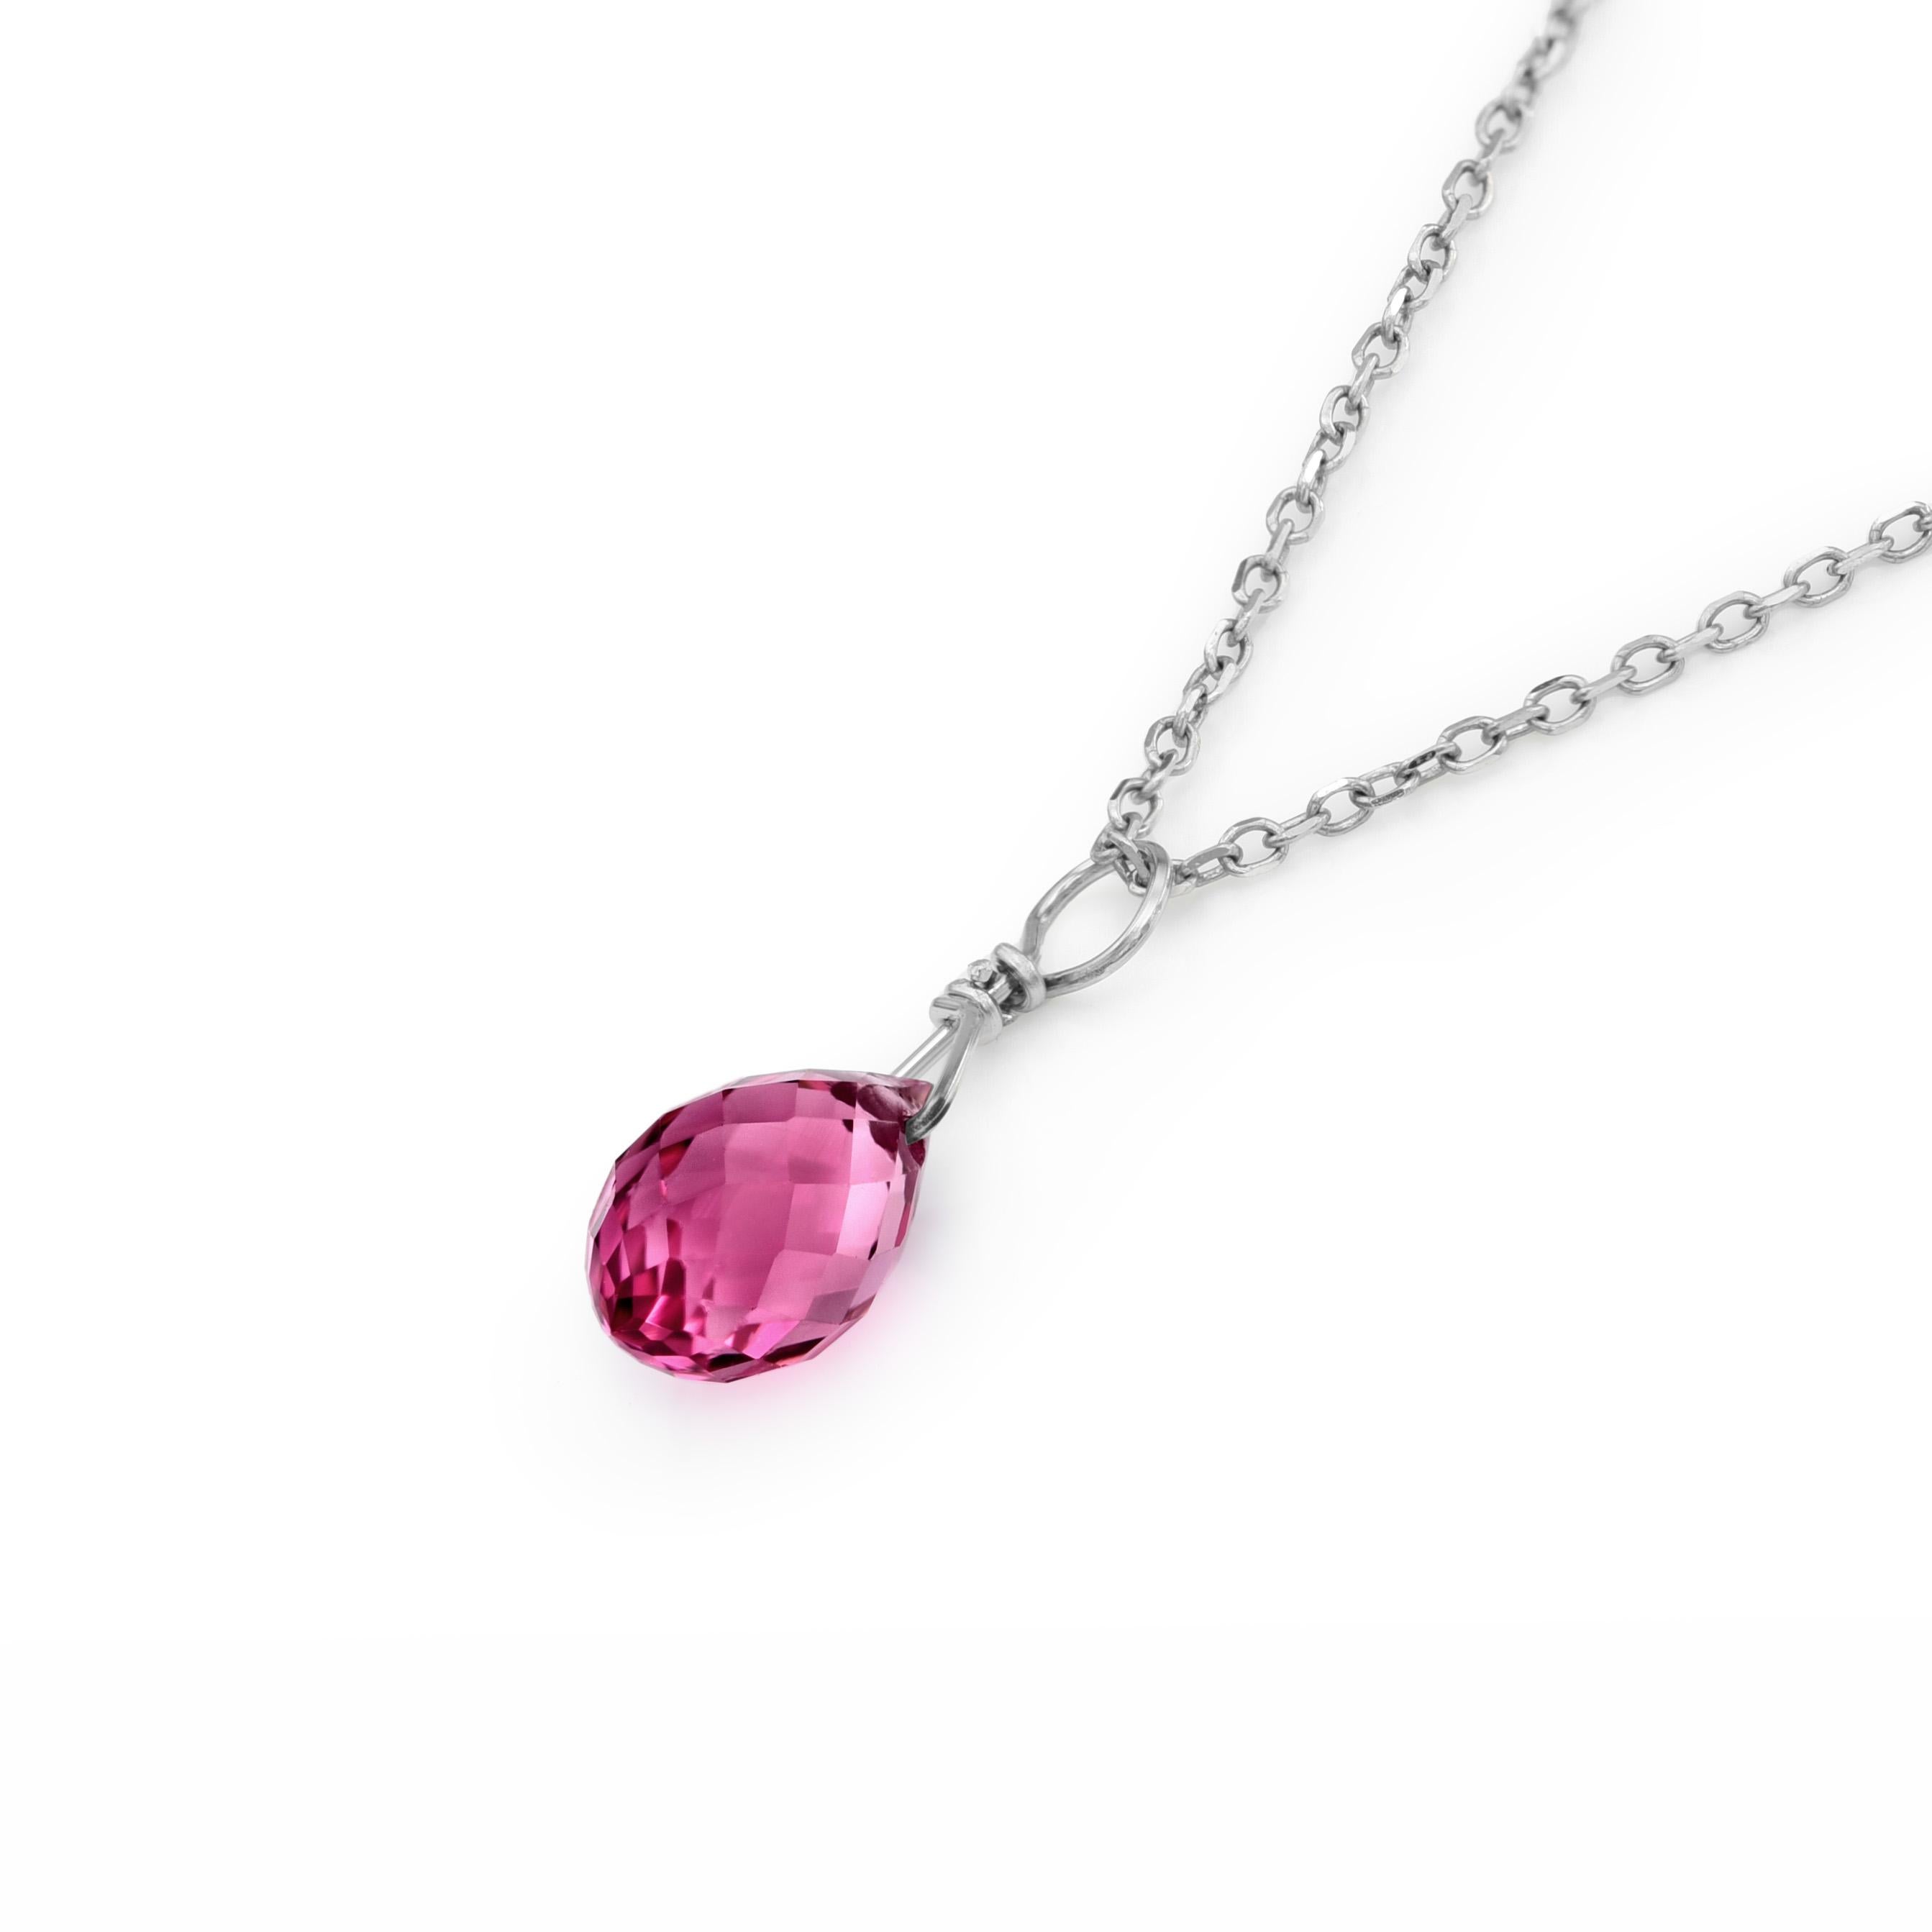 Découvrez l'élégance enchanteresse de notre pendentif en tourmaline rose, avec une pierre précieuse de 1,38 carats provenant du Brésil. Serti en or blanc 14 carats et accompagné d'une chaîne à ressort de 18 pouces, ce pendentif rayonne de beauté et